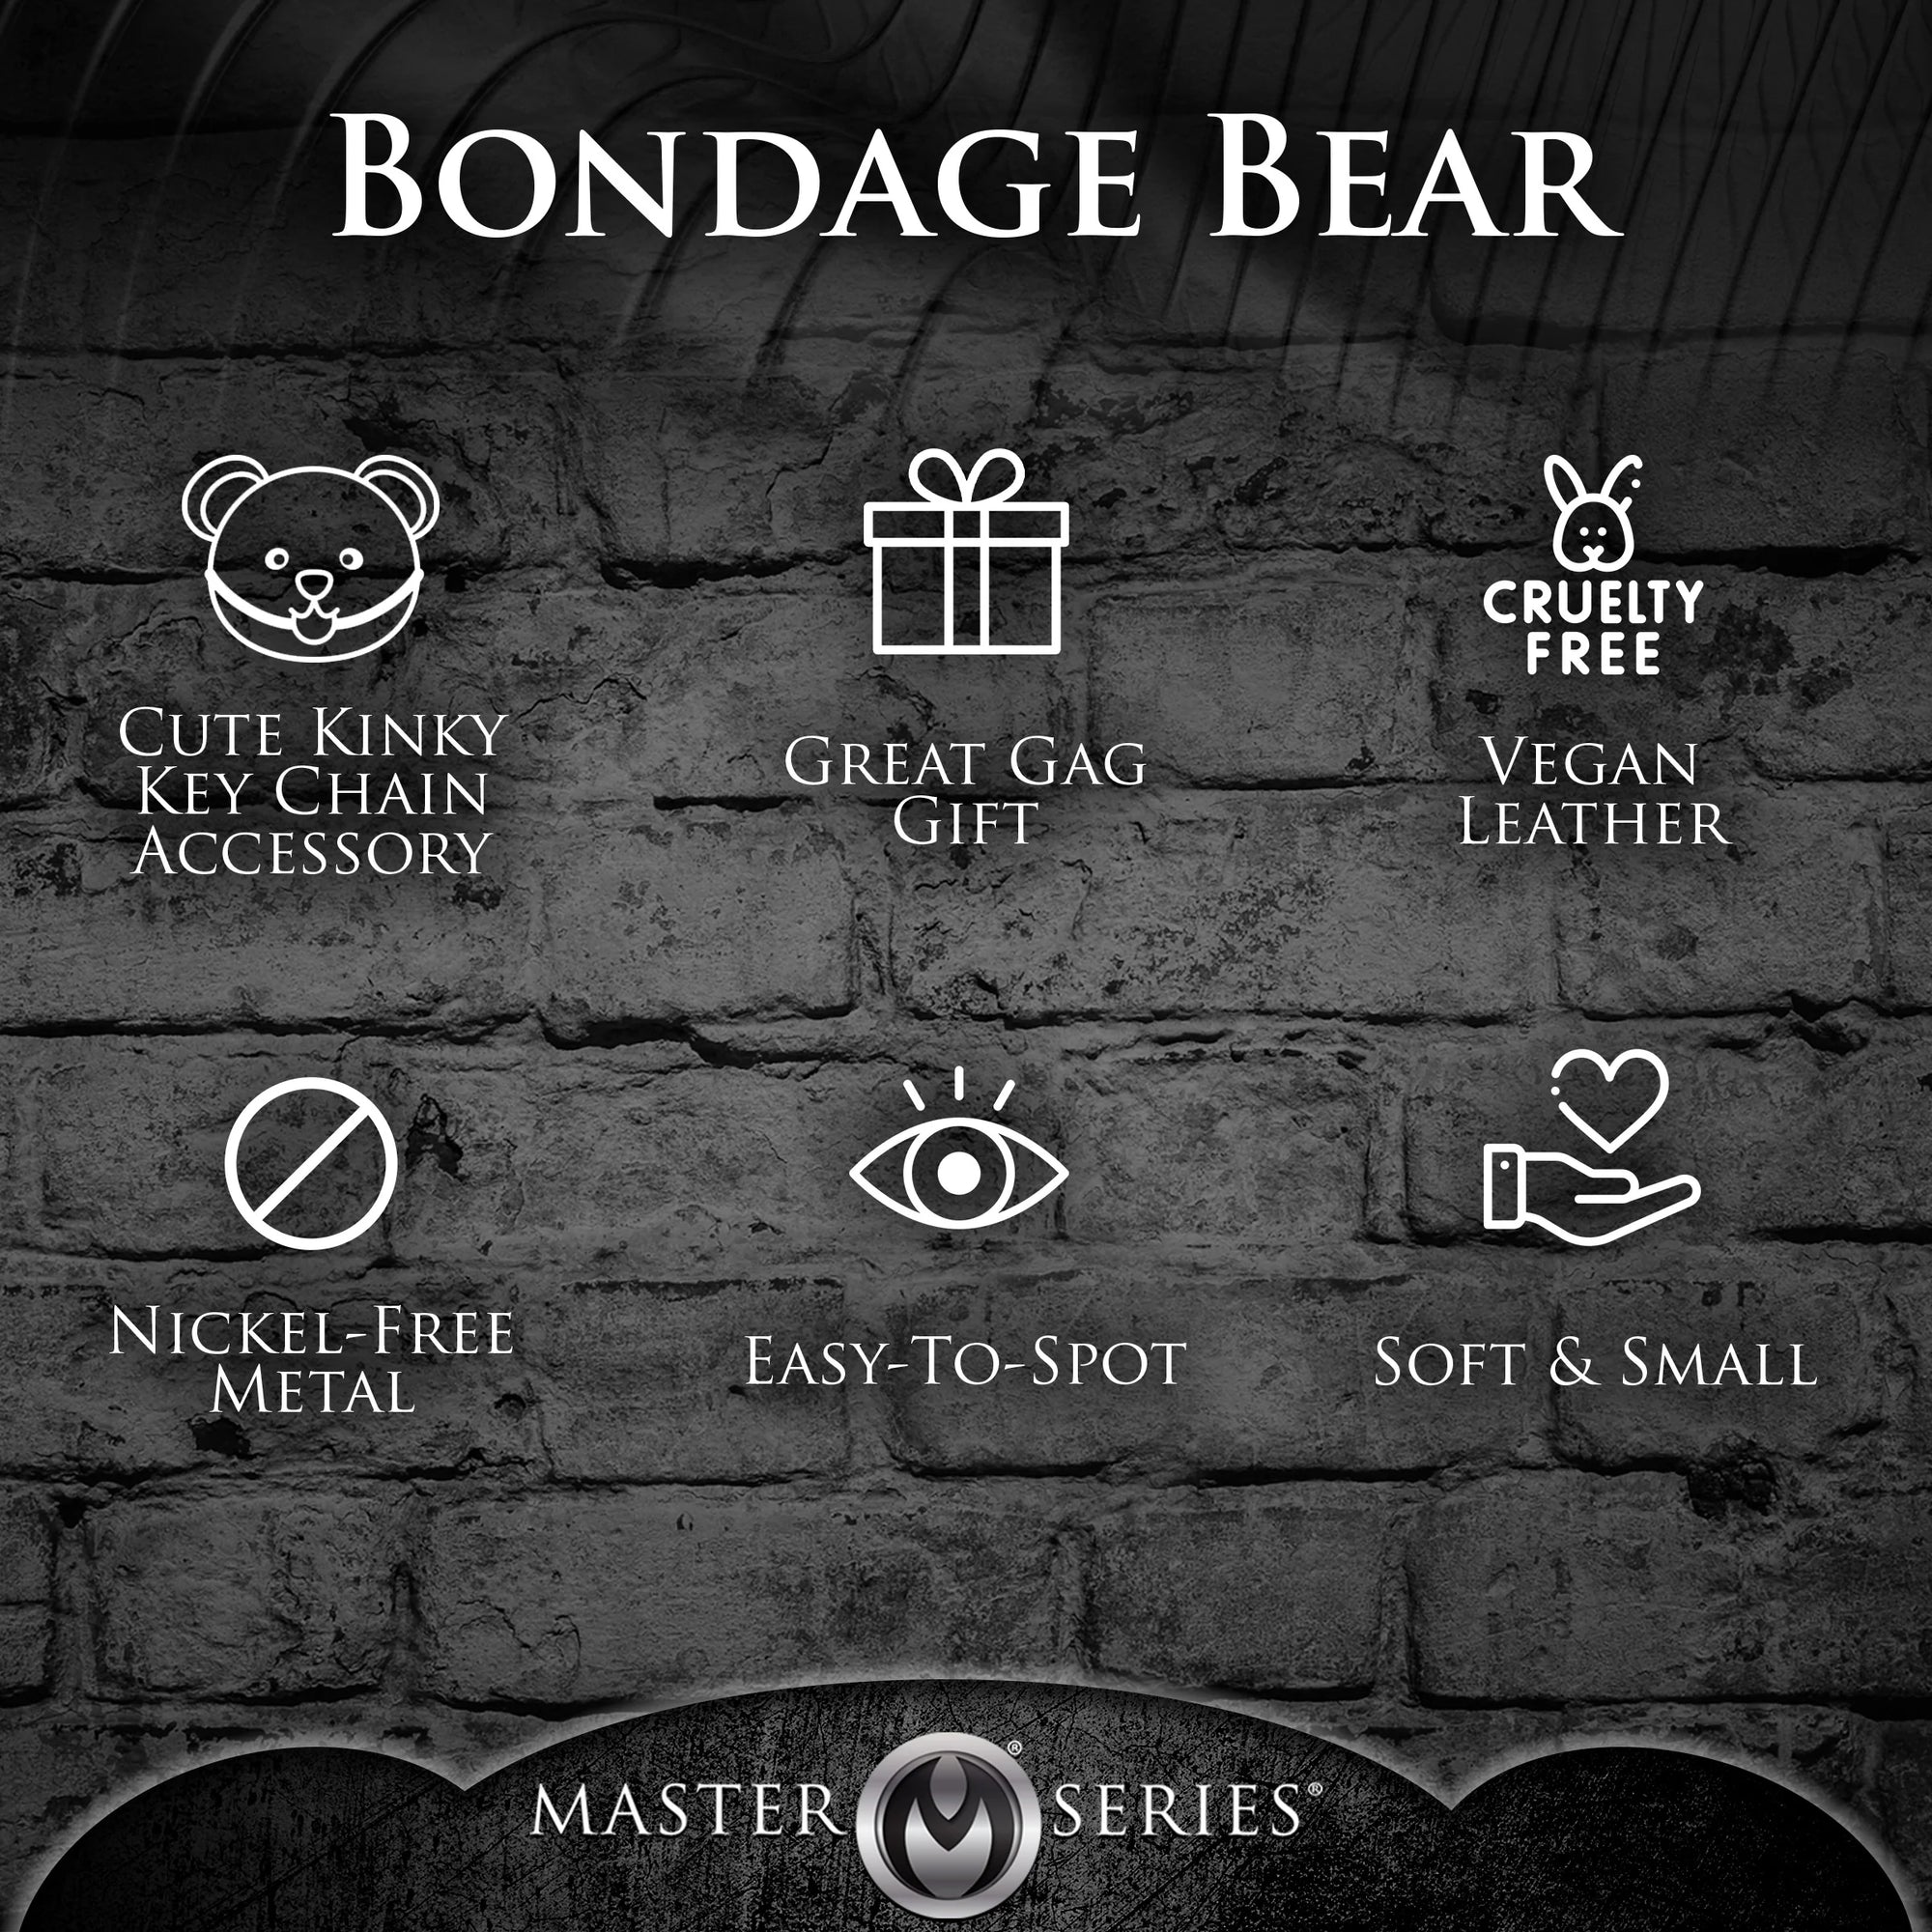 Bondage Teddy Bear Keychain BDSM by XR